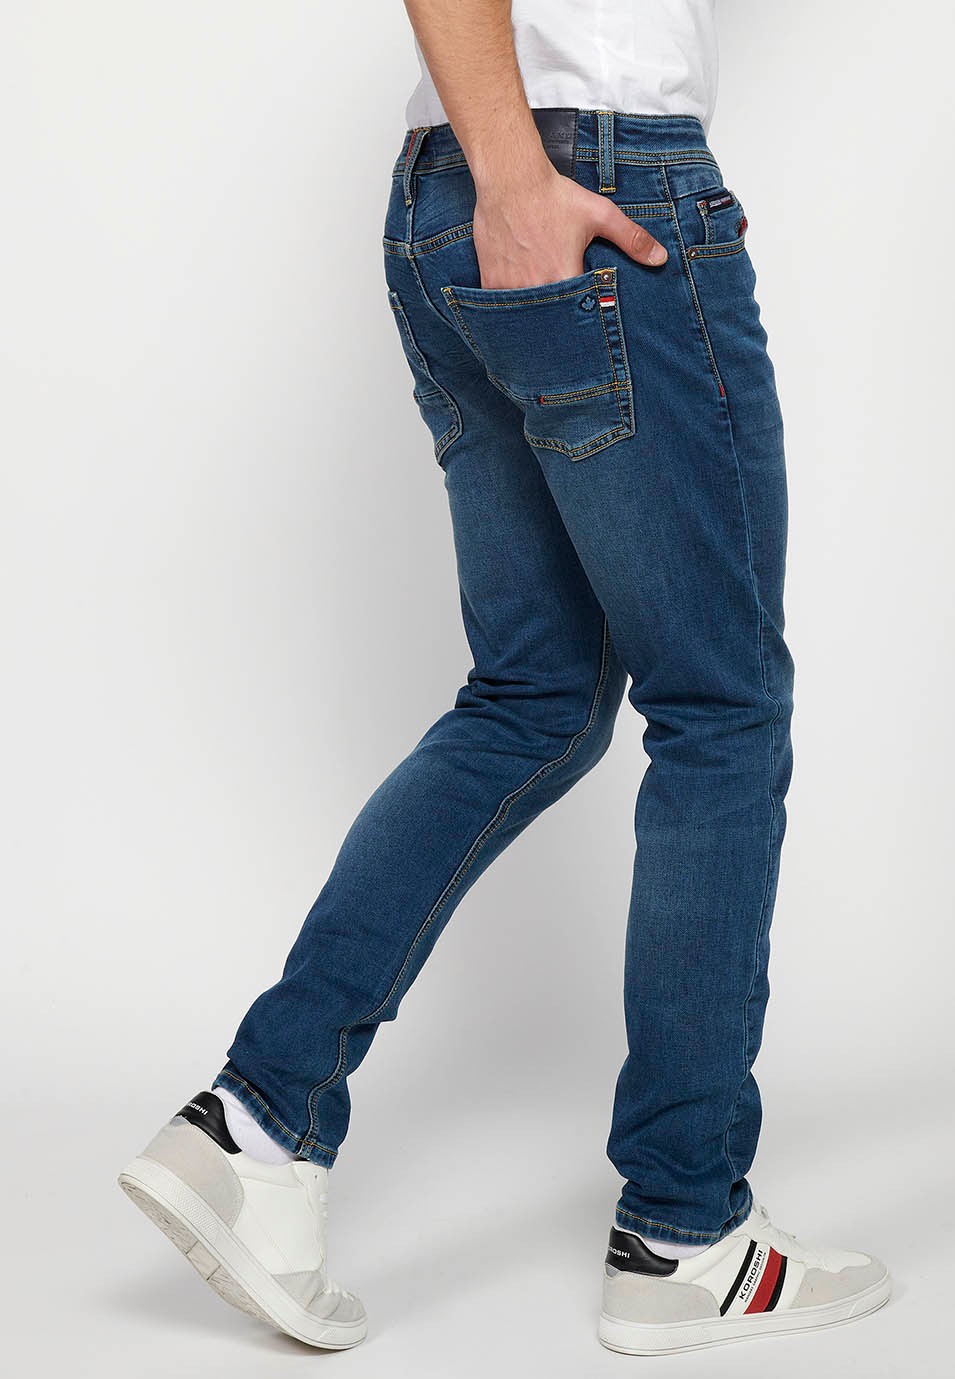 Long slim fit denim pants with five pockets, one match pocket, Blue for Men 7